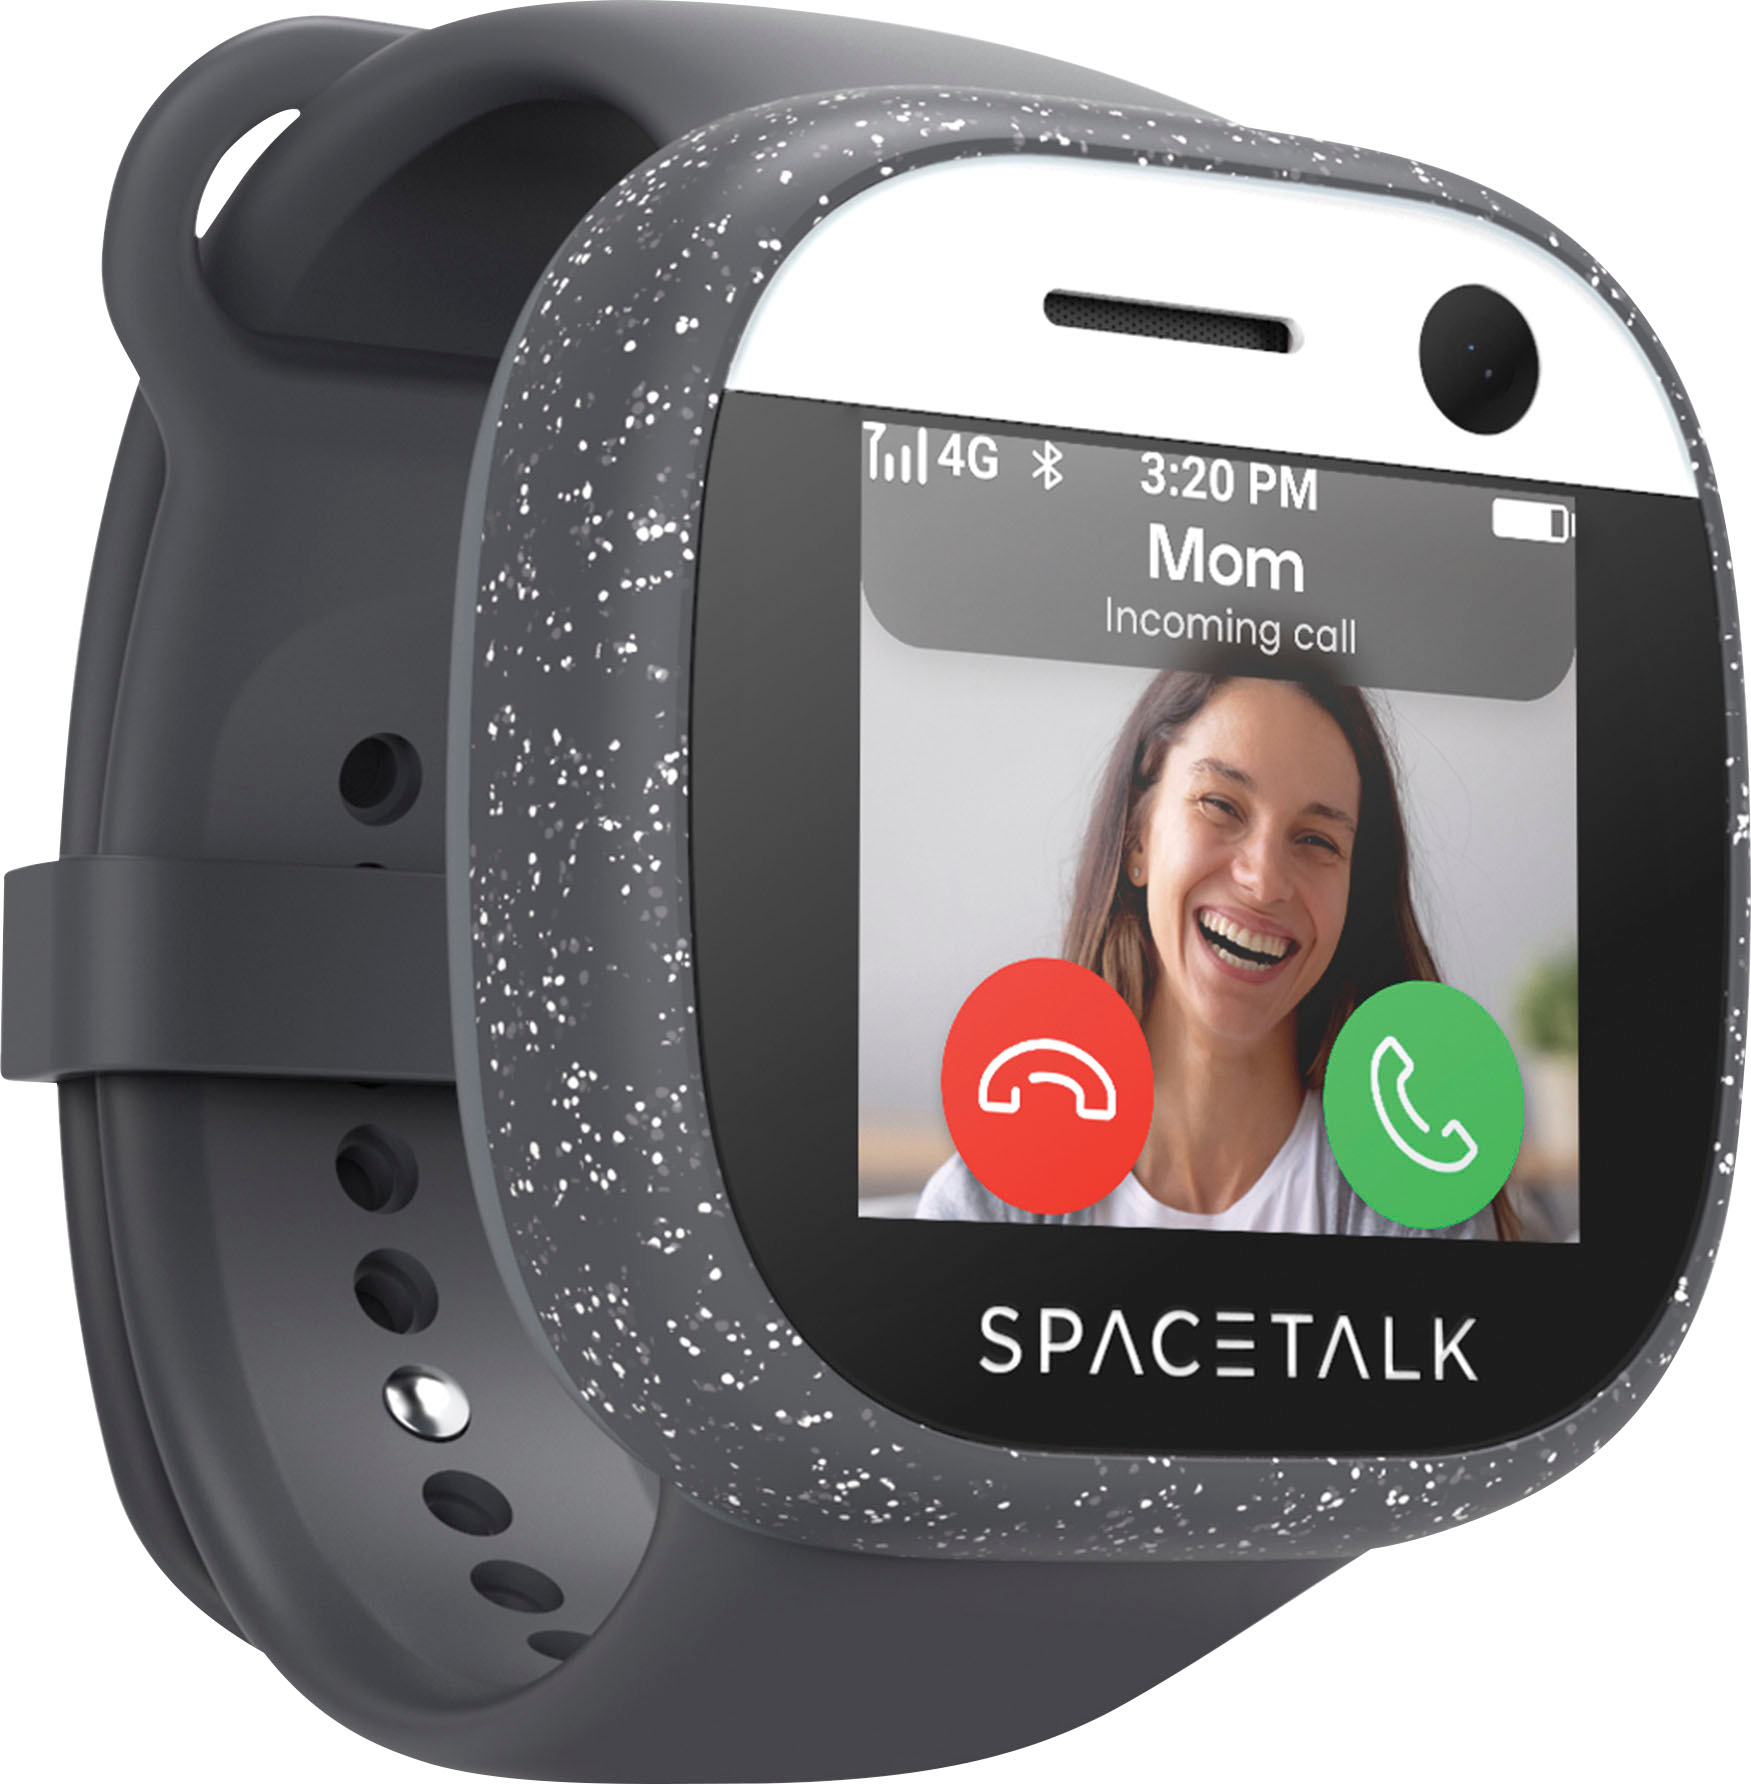 Emulatie Gorgelen argument Spacetalk Adventurer 4G Kids Smart Watch Phone and GPS Tracker Midnight  ST2-MN-2 - Best Buy